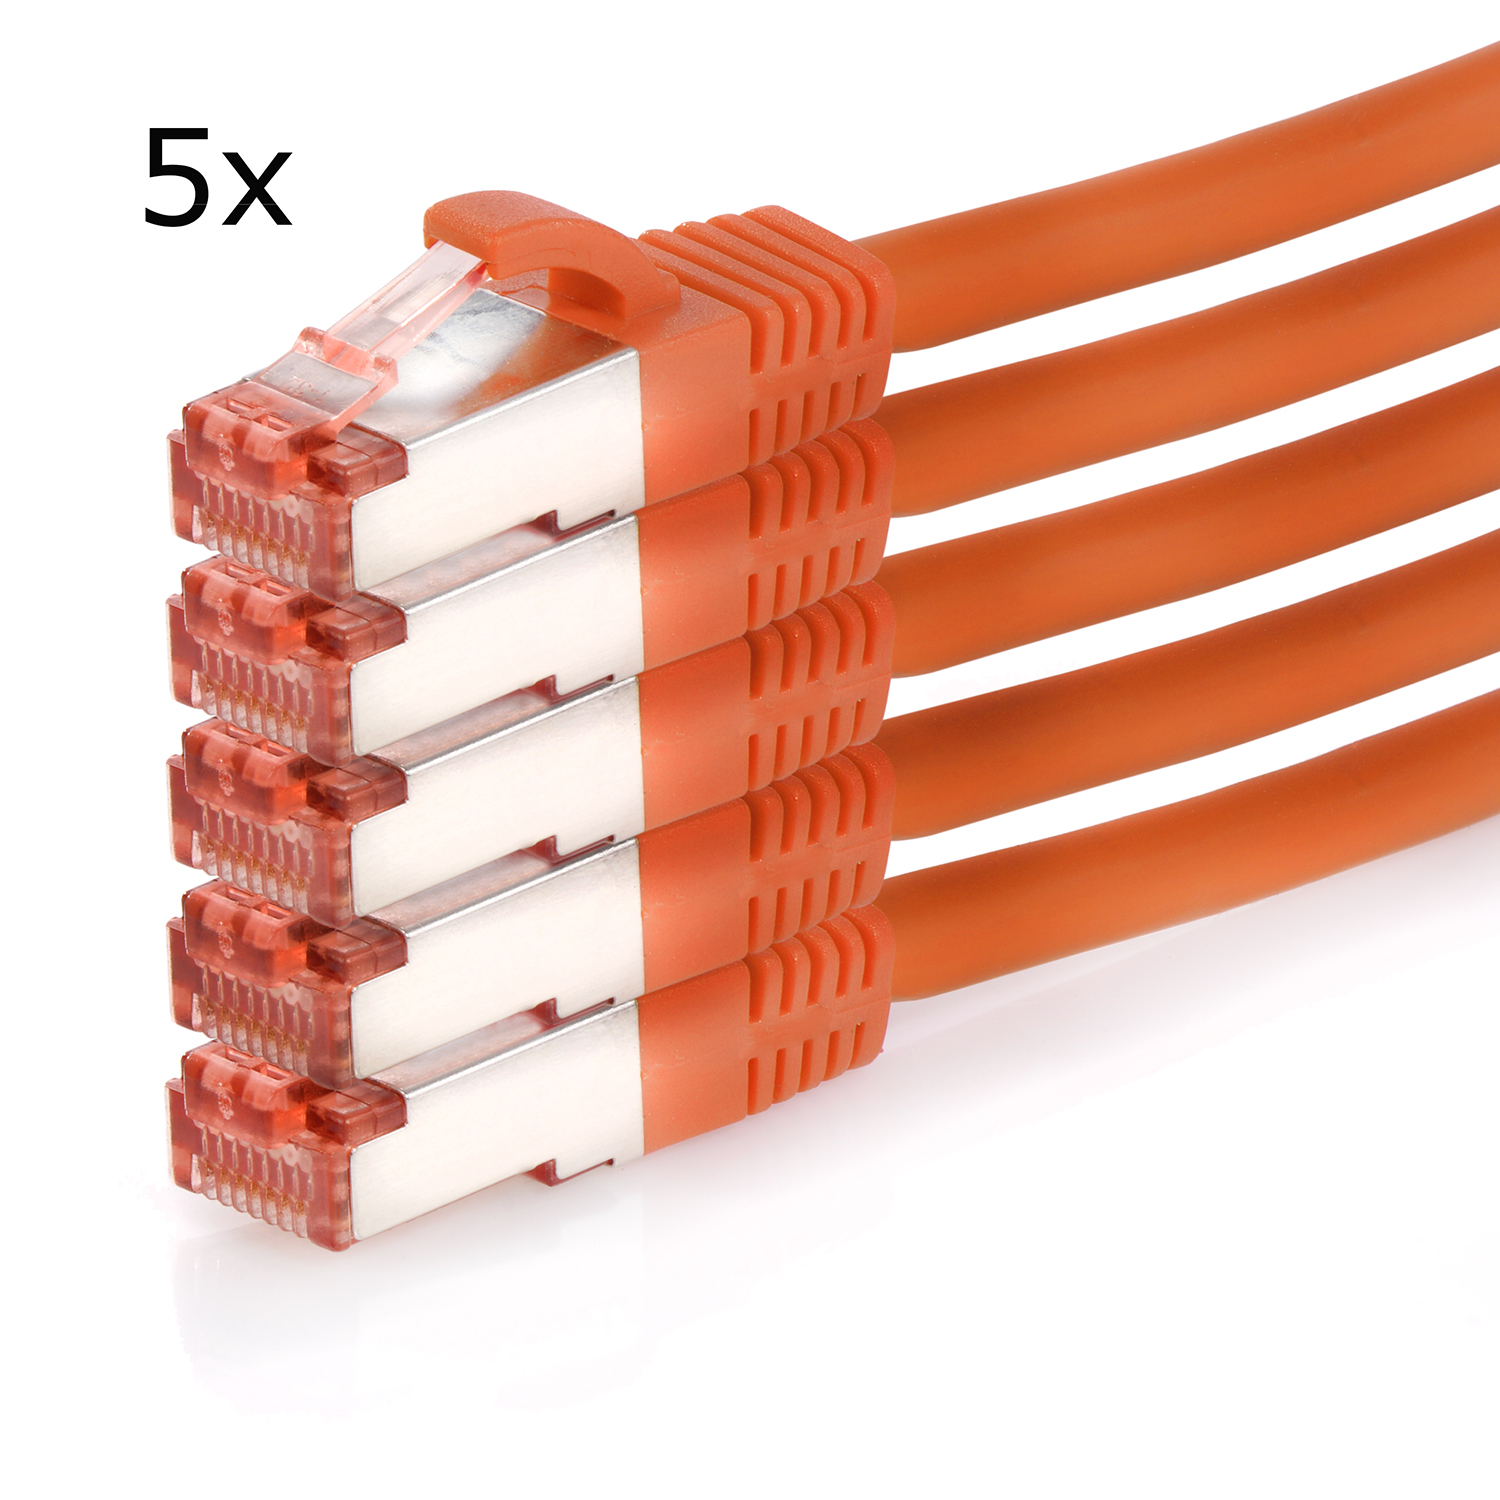 S/FTP 1000Mbit, 2 Netzwerkkabel, m orange, 5er Netzwerkkabel 2m / Pack Patchkabel TPFNET